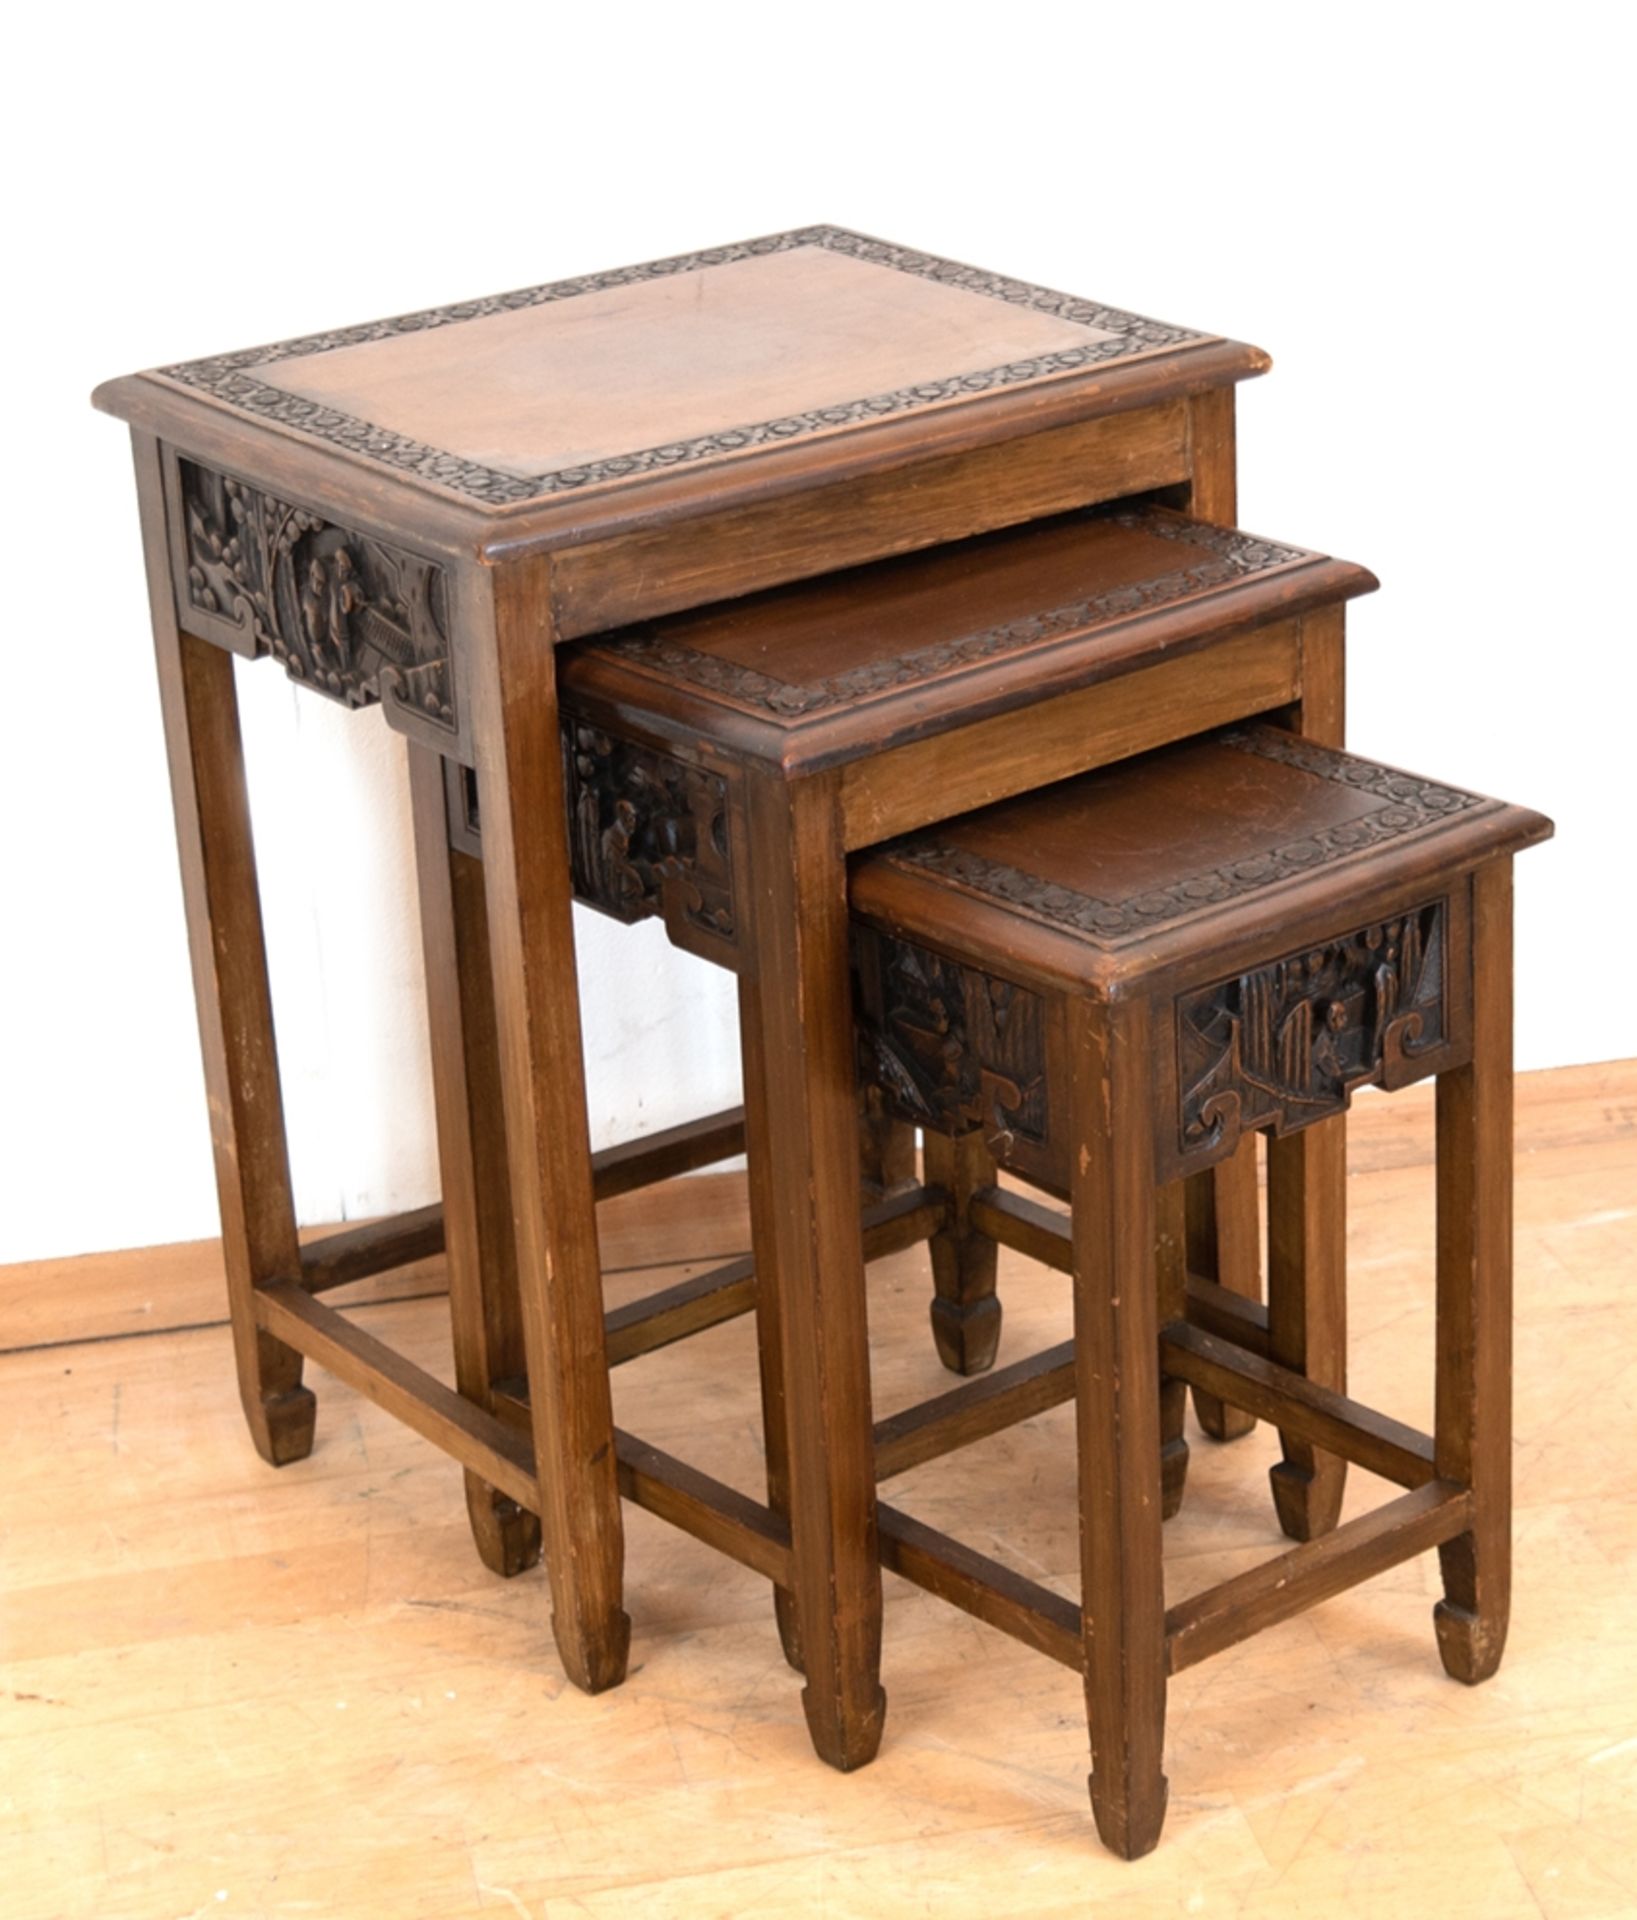 3-Satz-Tische, Asien, nußbaumfarben, Zargen figürlich beschnitzt, Deckplatten mit floraler Kante, G